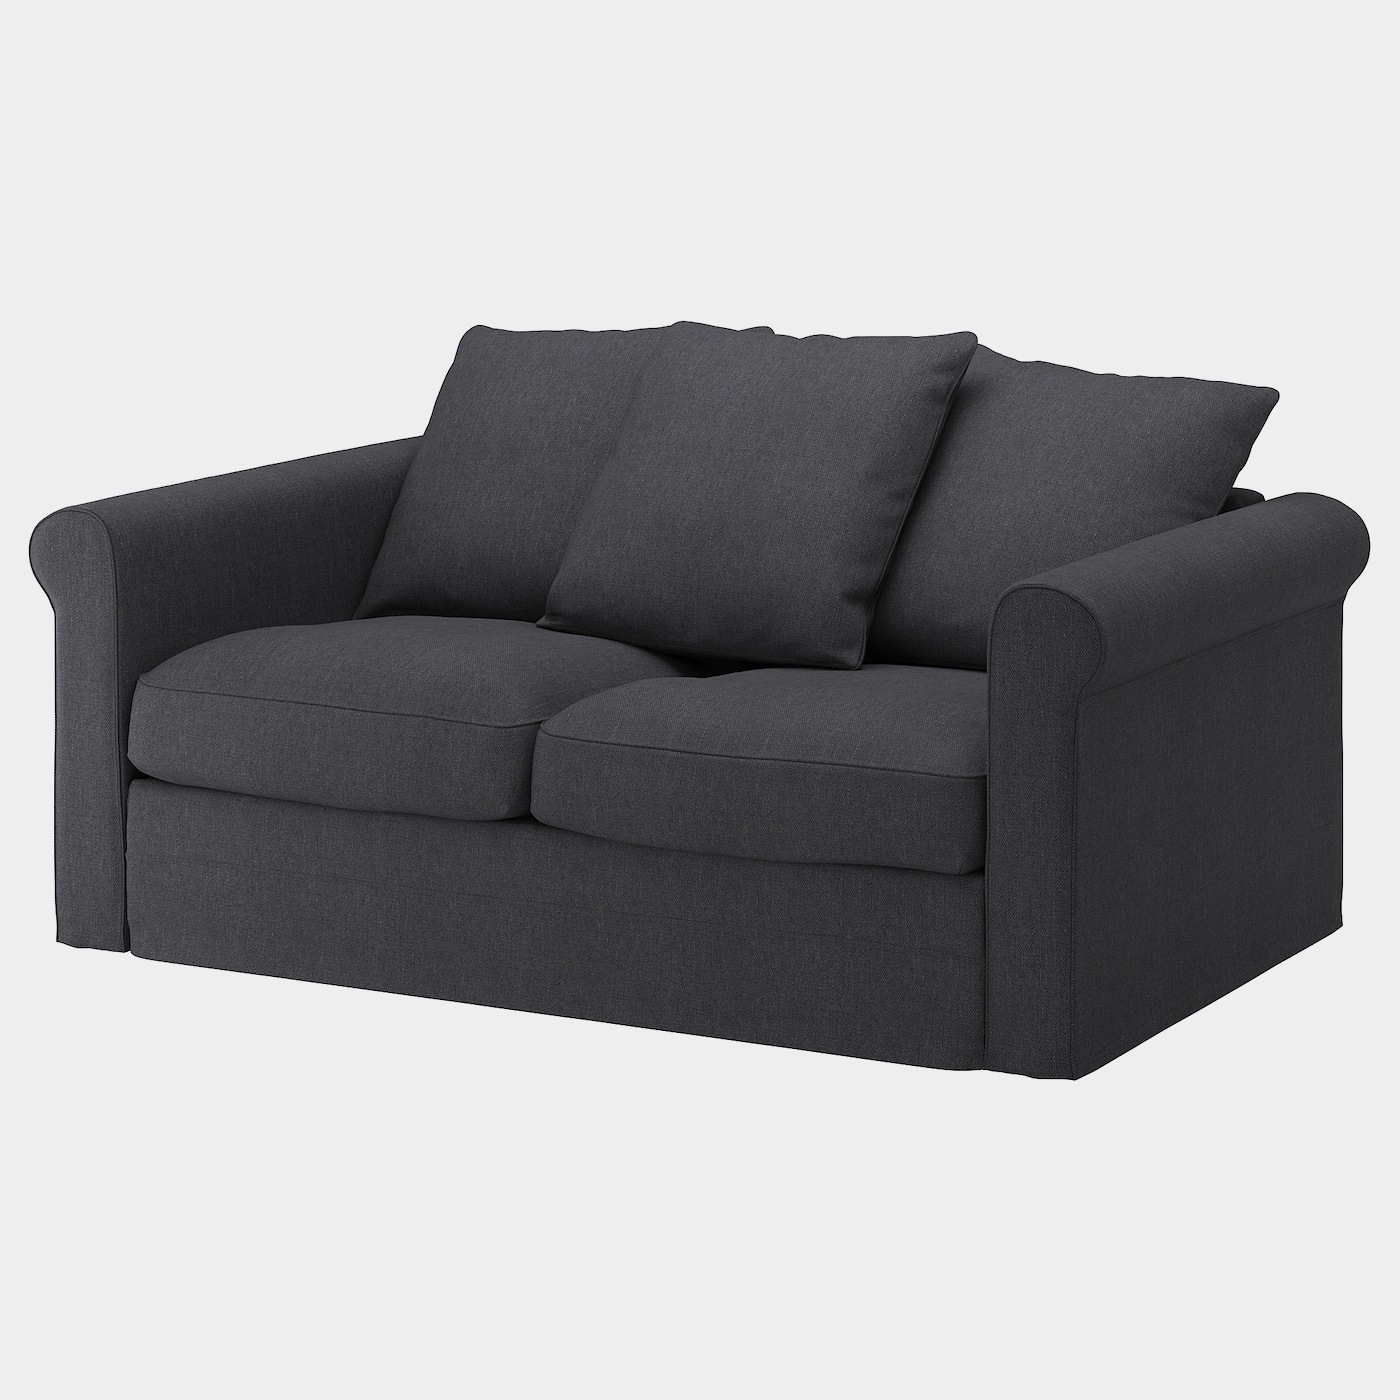 GRÖNLID Bezug 2er-Sofa  -  - Möbel Ideen für dein Zuhause von Home Trends. Möbel Trends von Social Media Influencer für dein Skandi Zuhause.